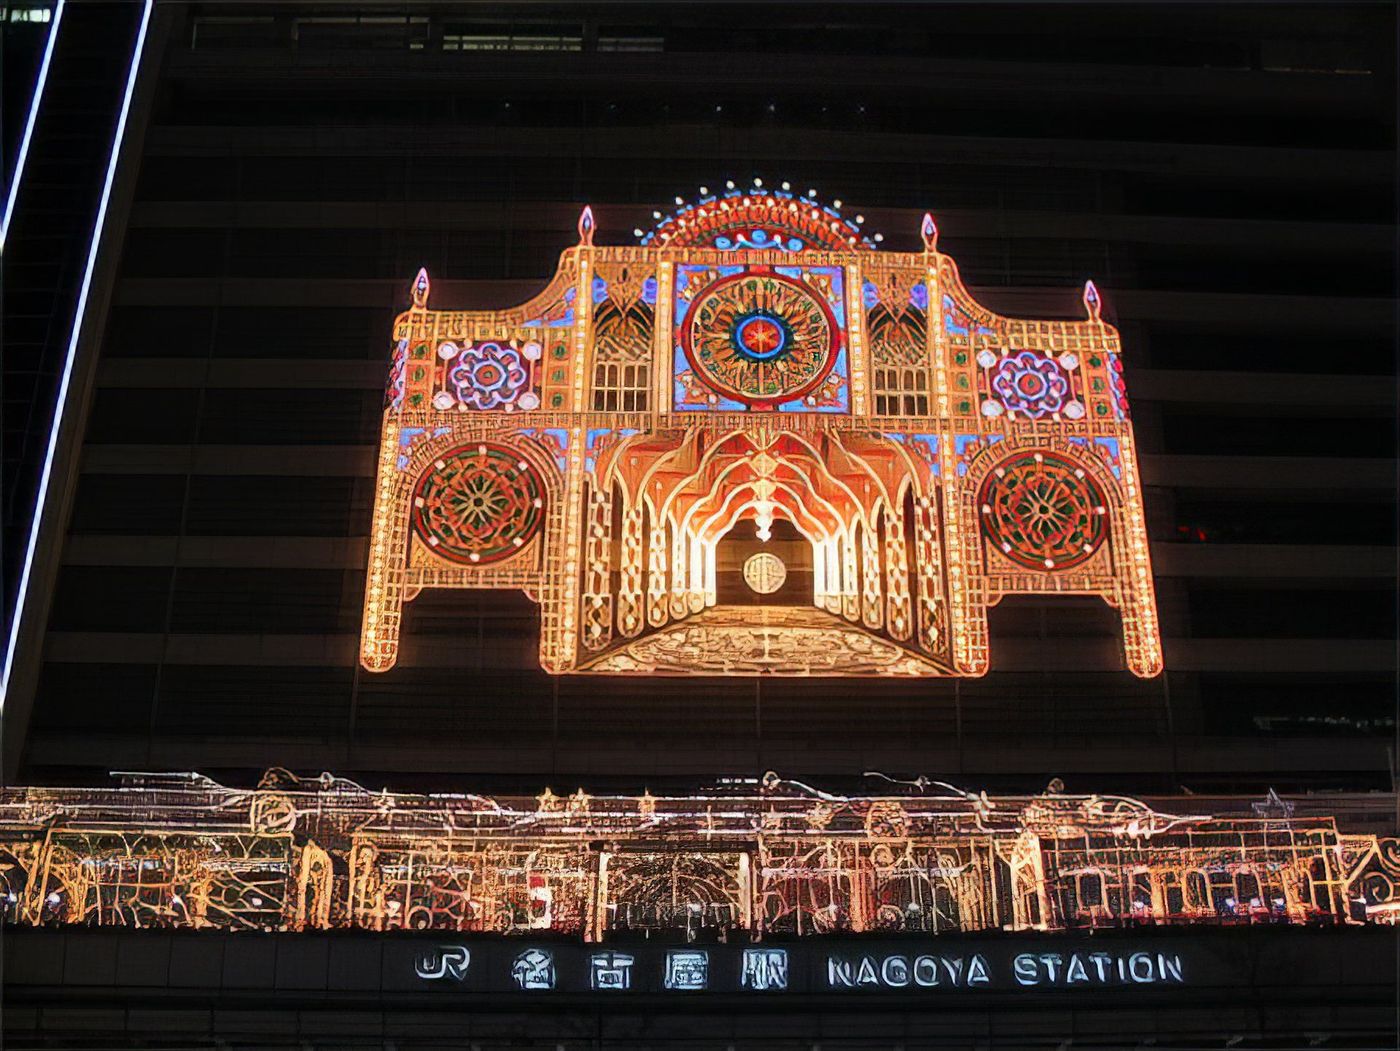 Nagoya station